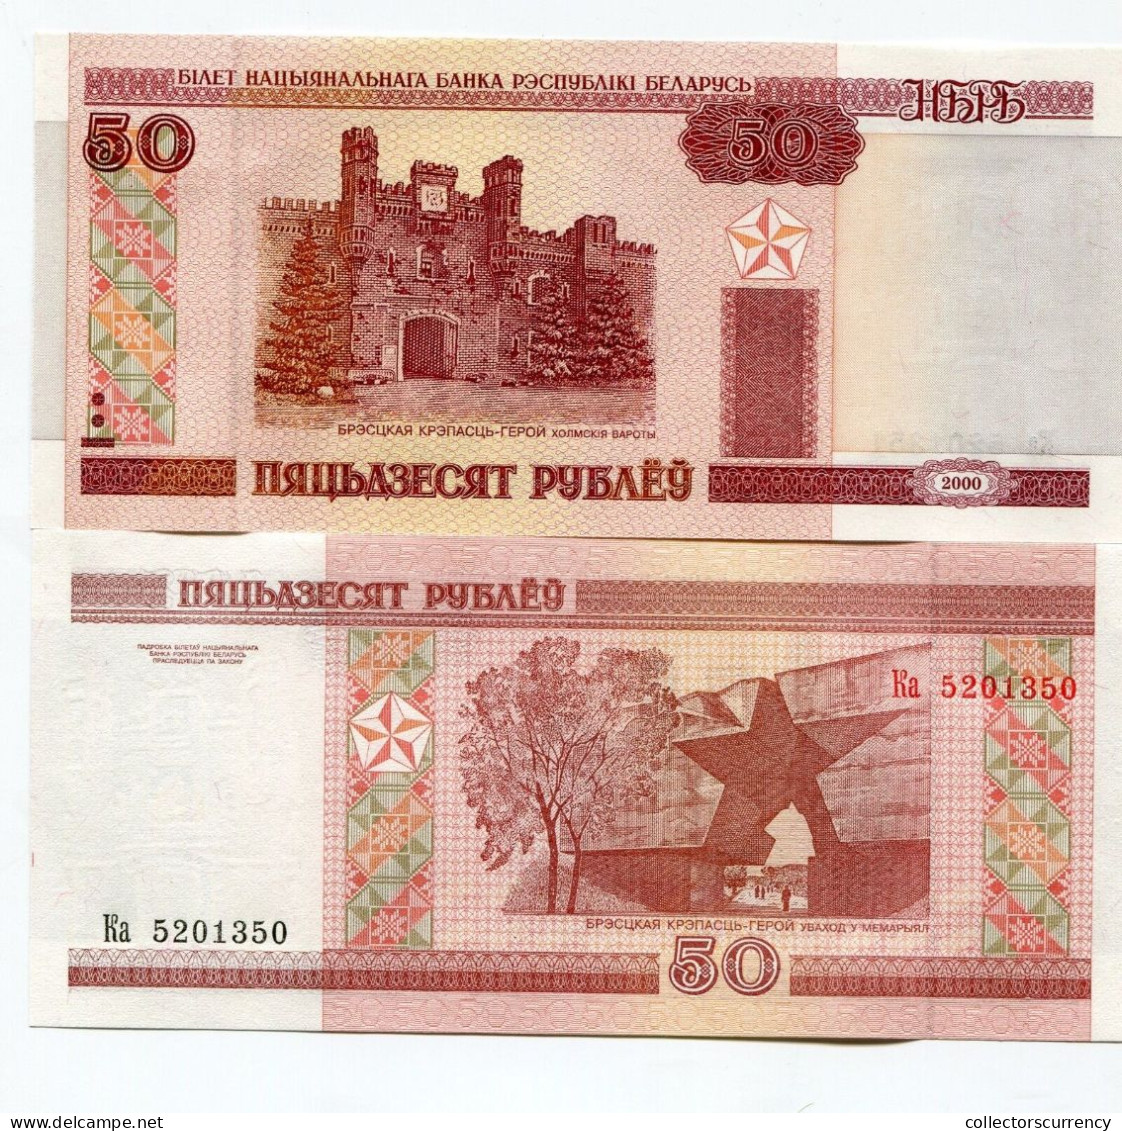 Belarus 50 Rublei 2000 Banknote Paper Money P25 X 10 Piece Lot - Bielorussia